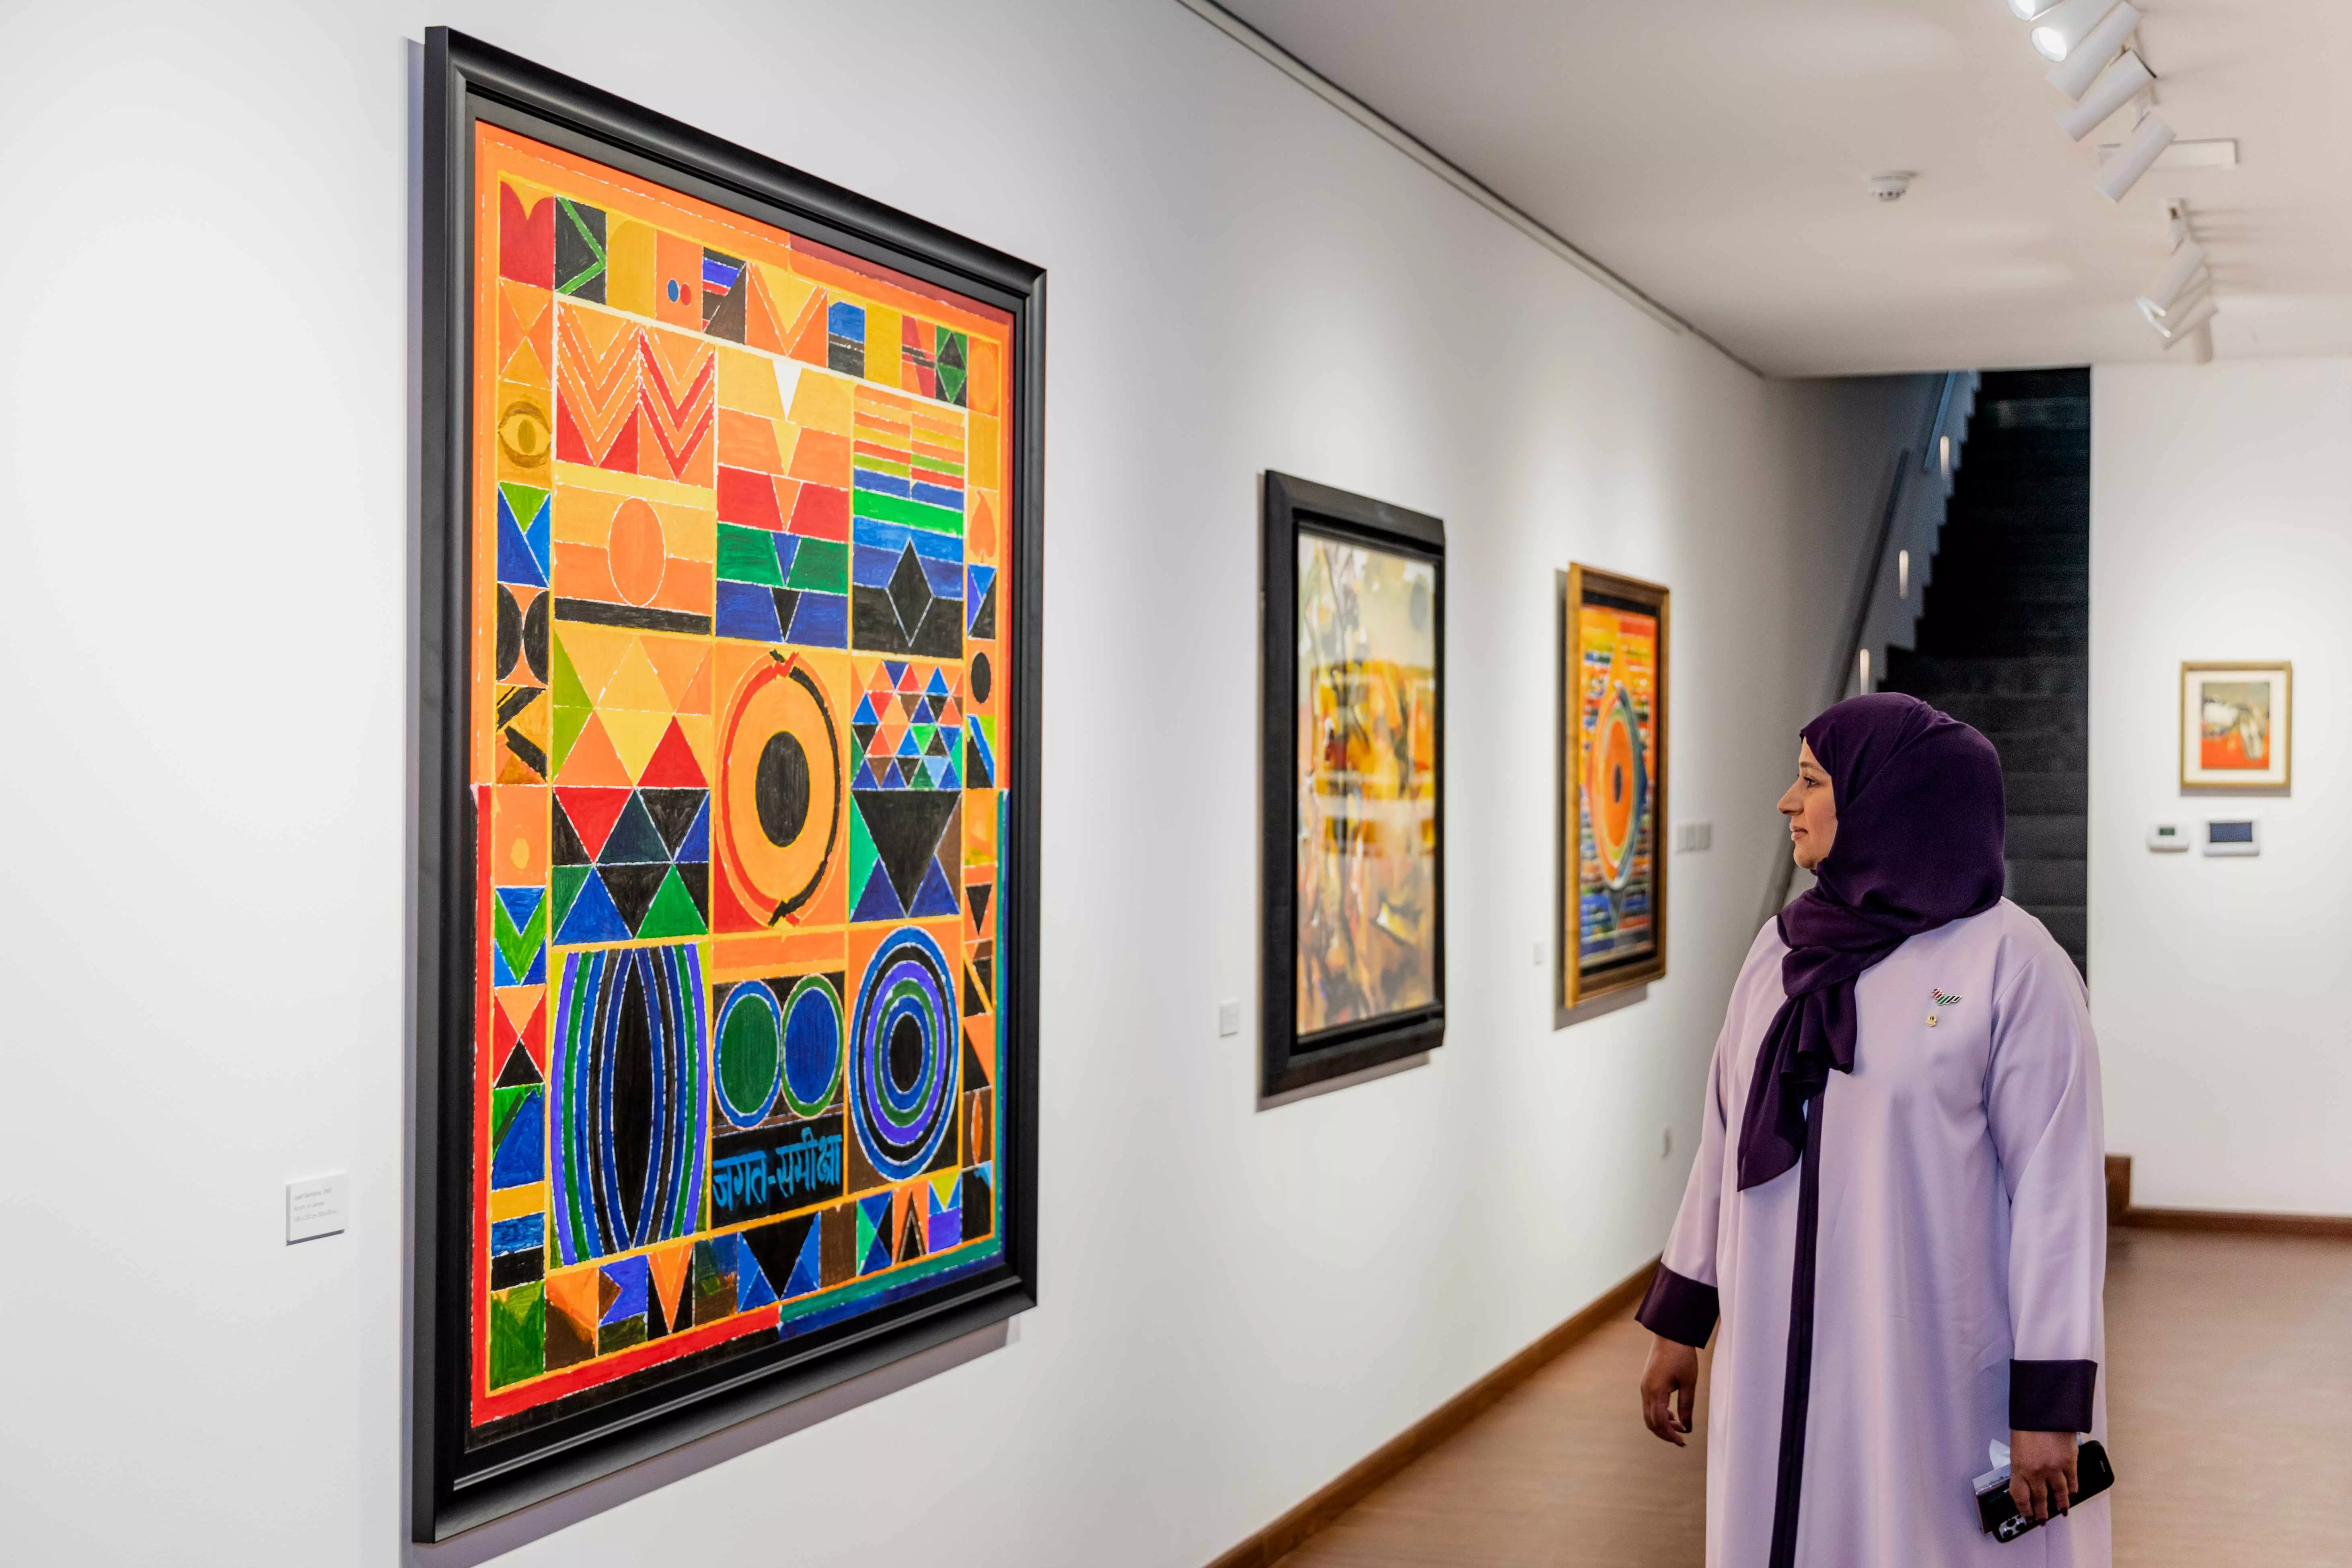 Art retrospective honouring late Indian modern artist S H Raza opens in Dubai